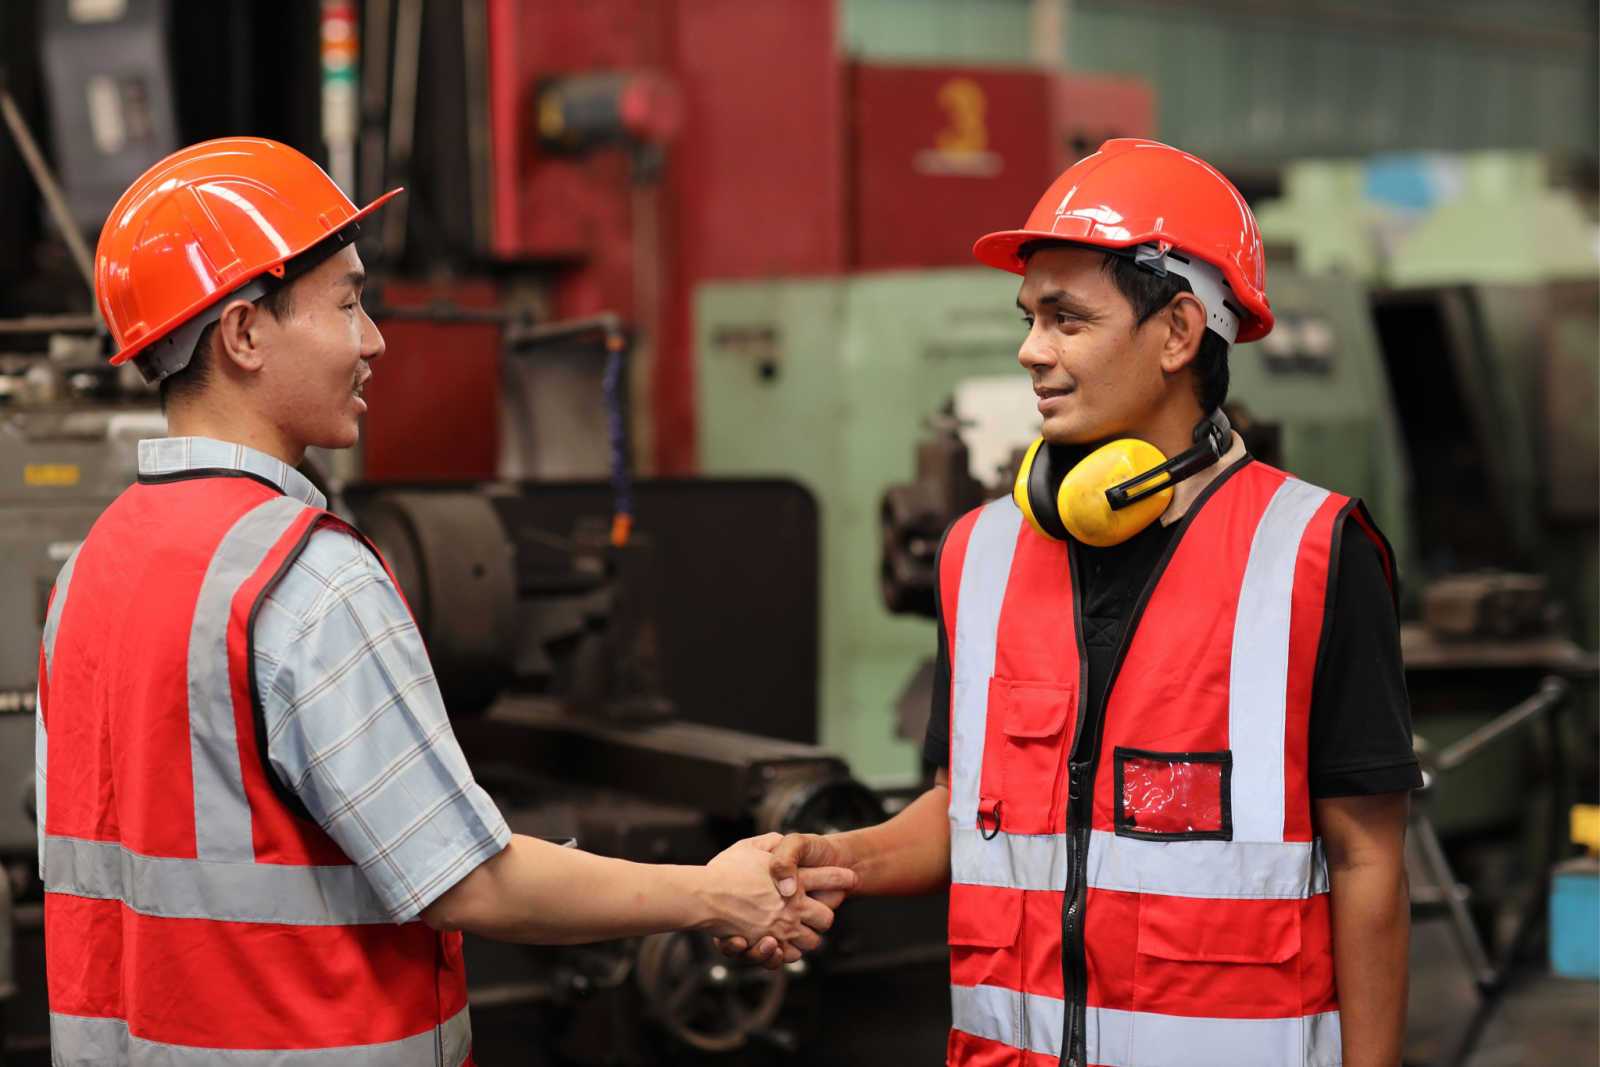 Maintenance_Supervisors_shaking_hands_wearing_orange_safety_vests